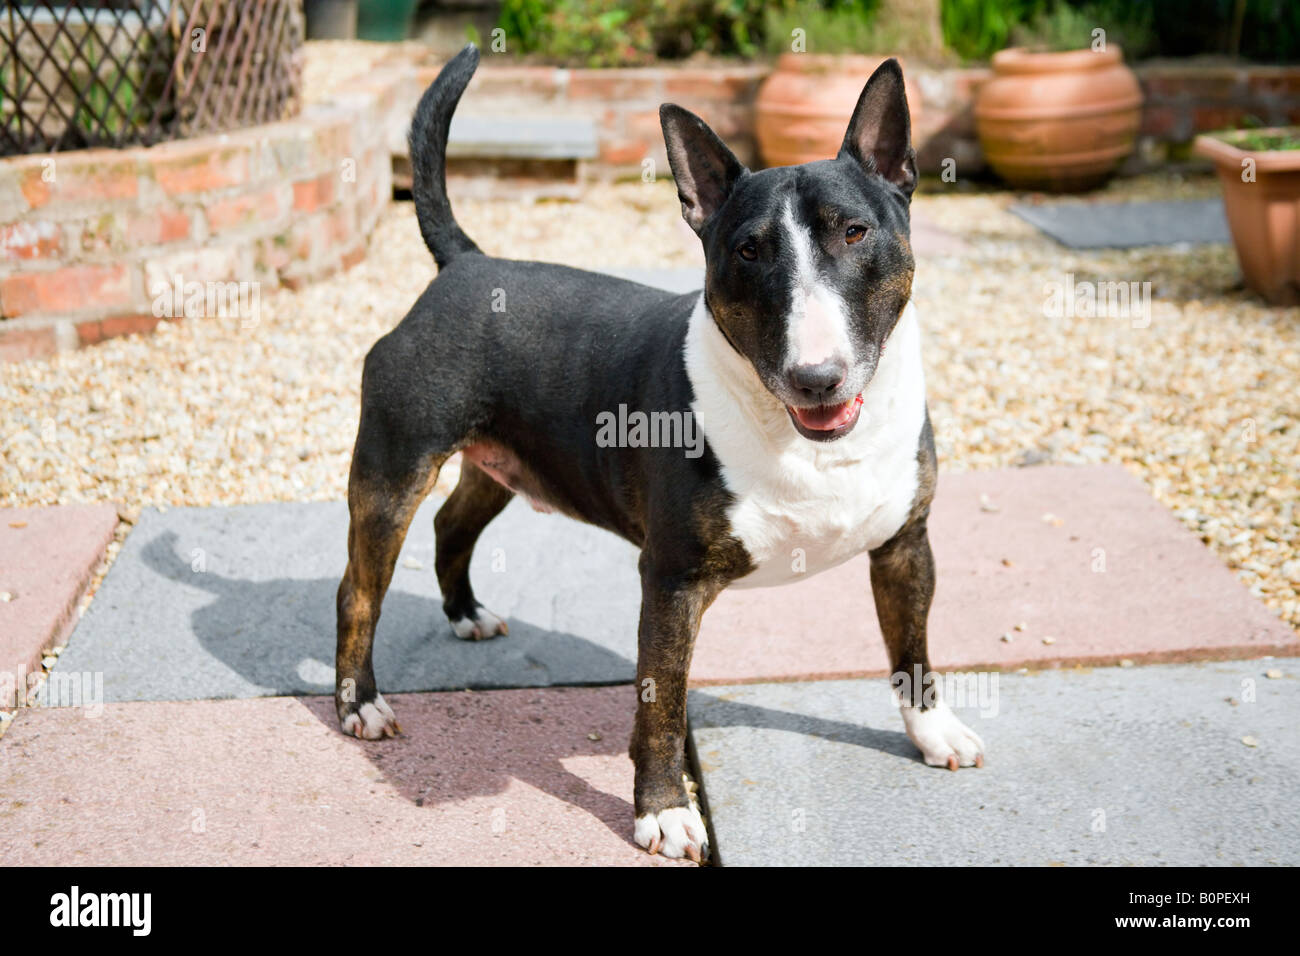 Eine männliche ^ Hund der Rasse English Bull Terrier stand stolz in einem Garten mit seinem Mund leicht geöffnet, Warnung suchen. Stockfoto